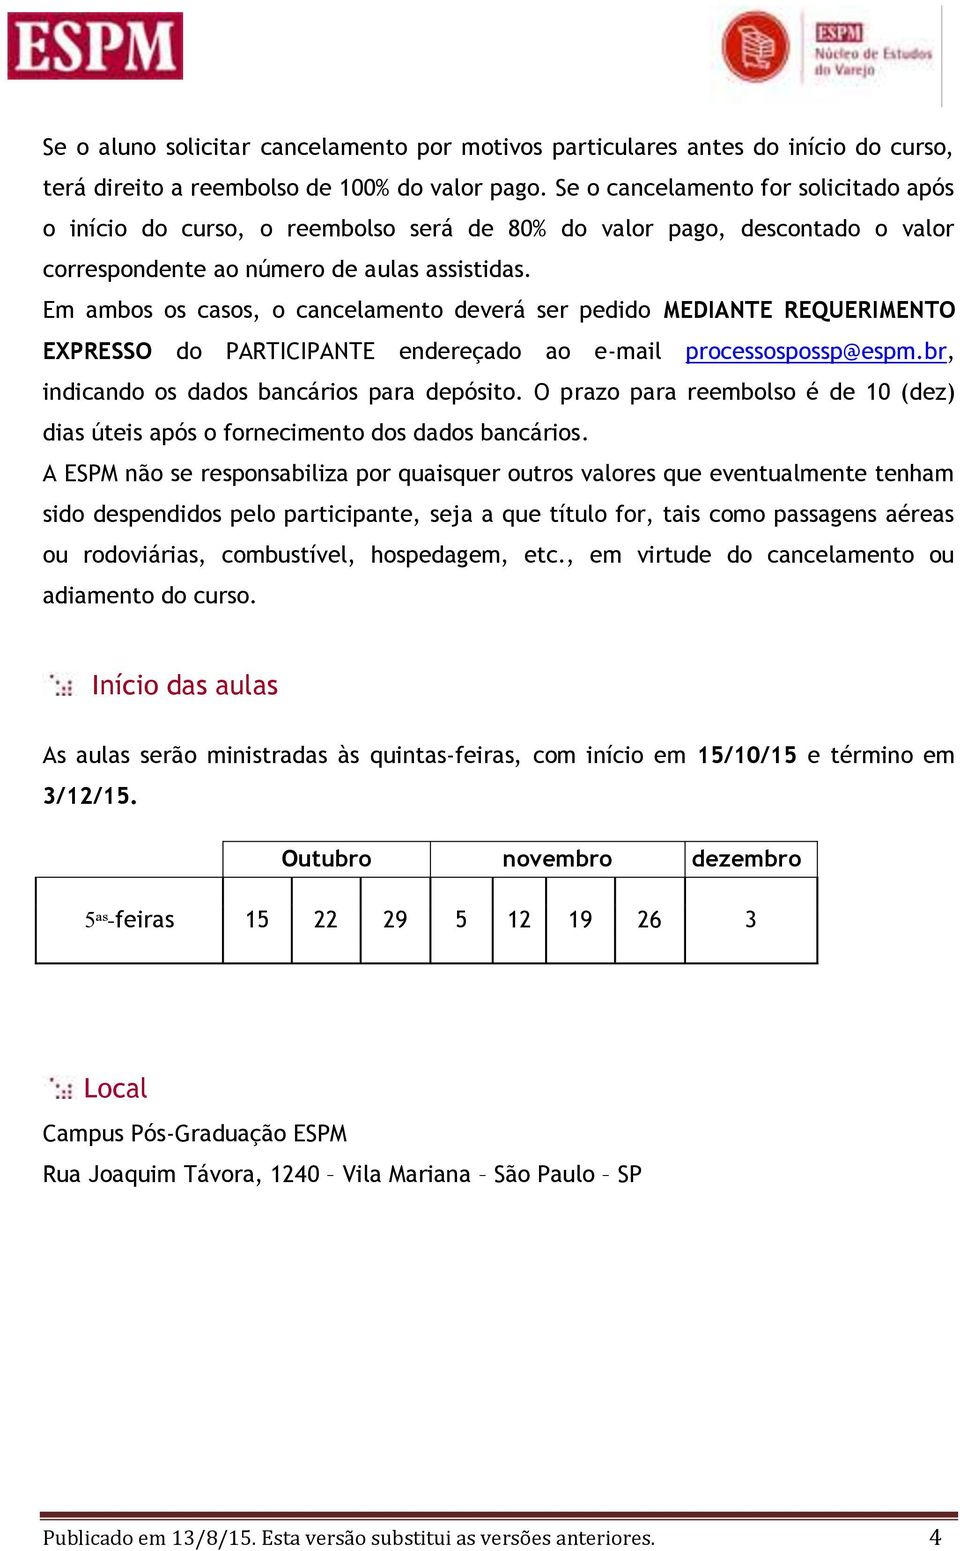 Em ambos os casos, o cancelamento deverá ser pedido MEDIANTE REQUERIMENTO EXPRESSO do PARTICIPANTE endereçado ao e-mail processospossp@espm.br, indicando os dados bancários para depósito.